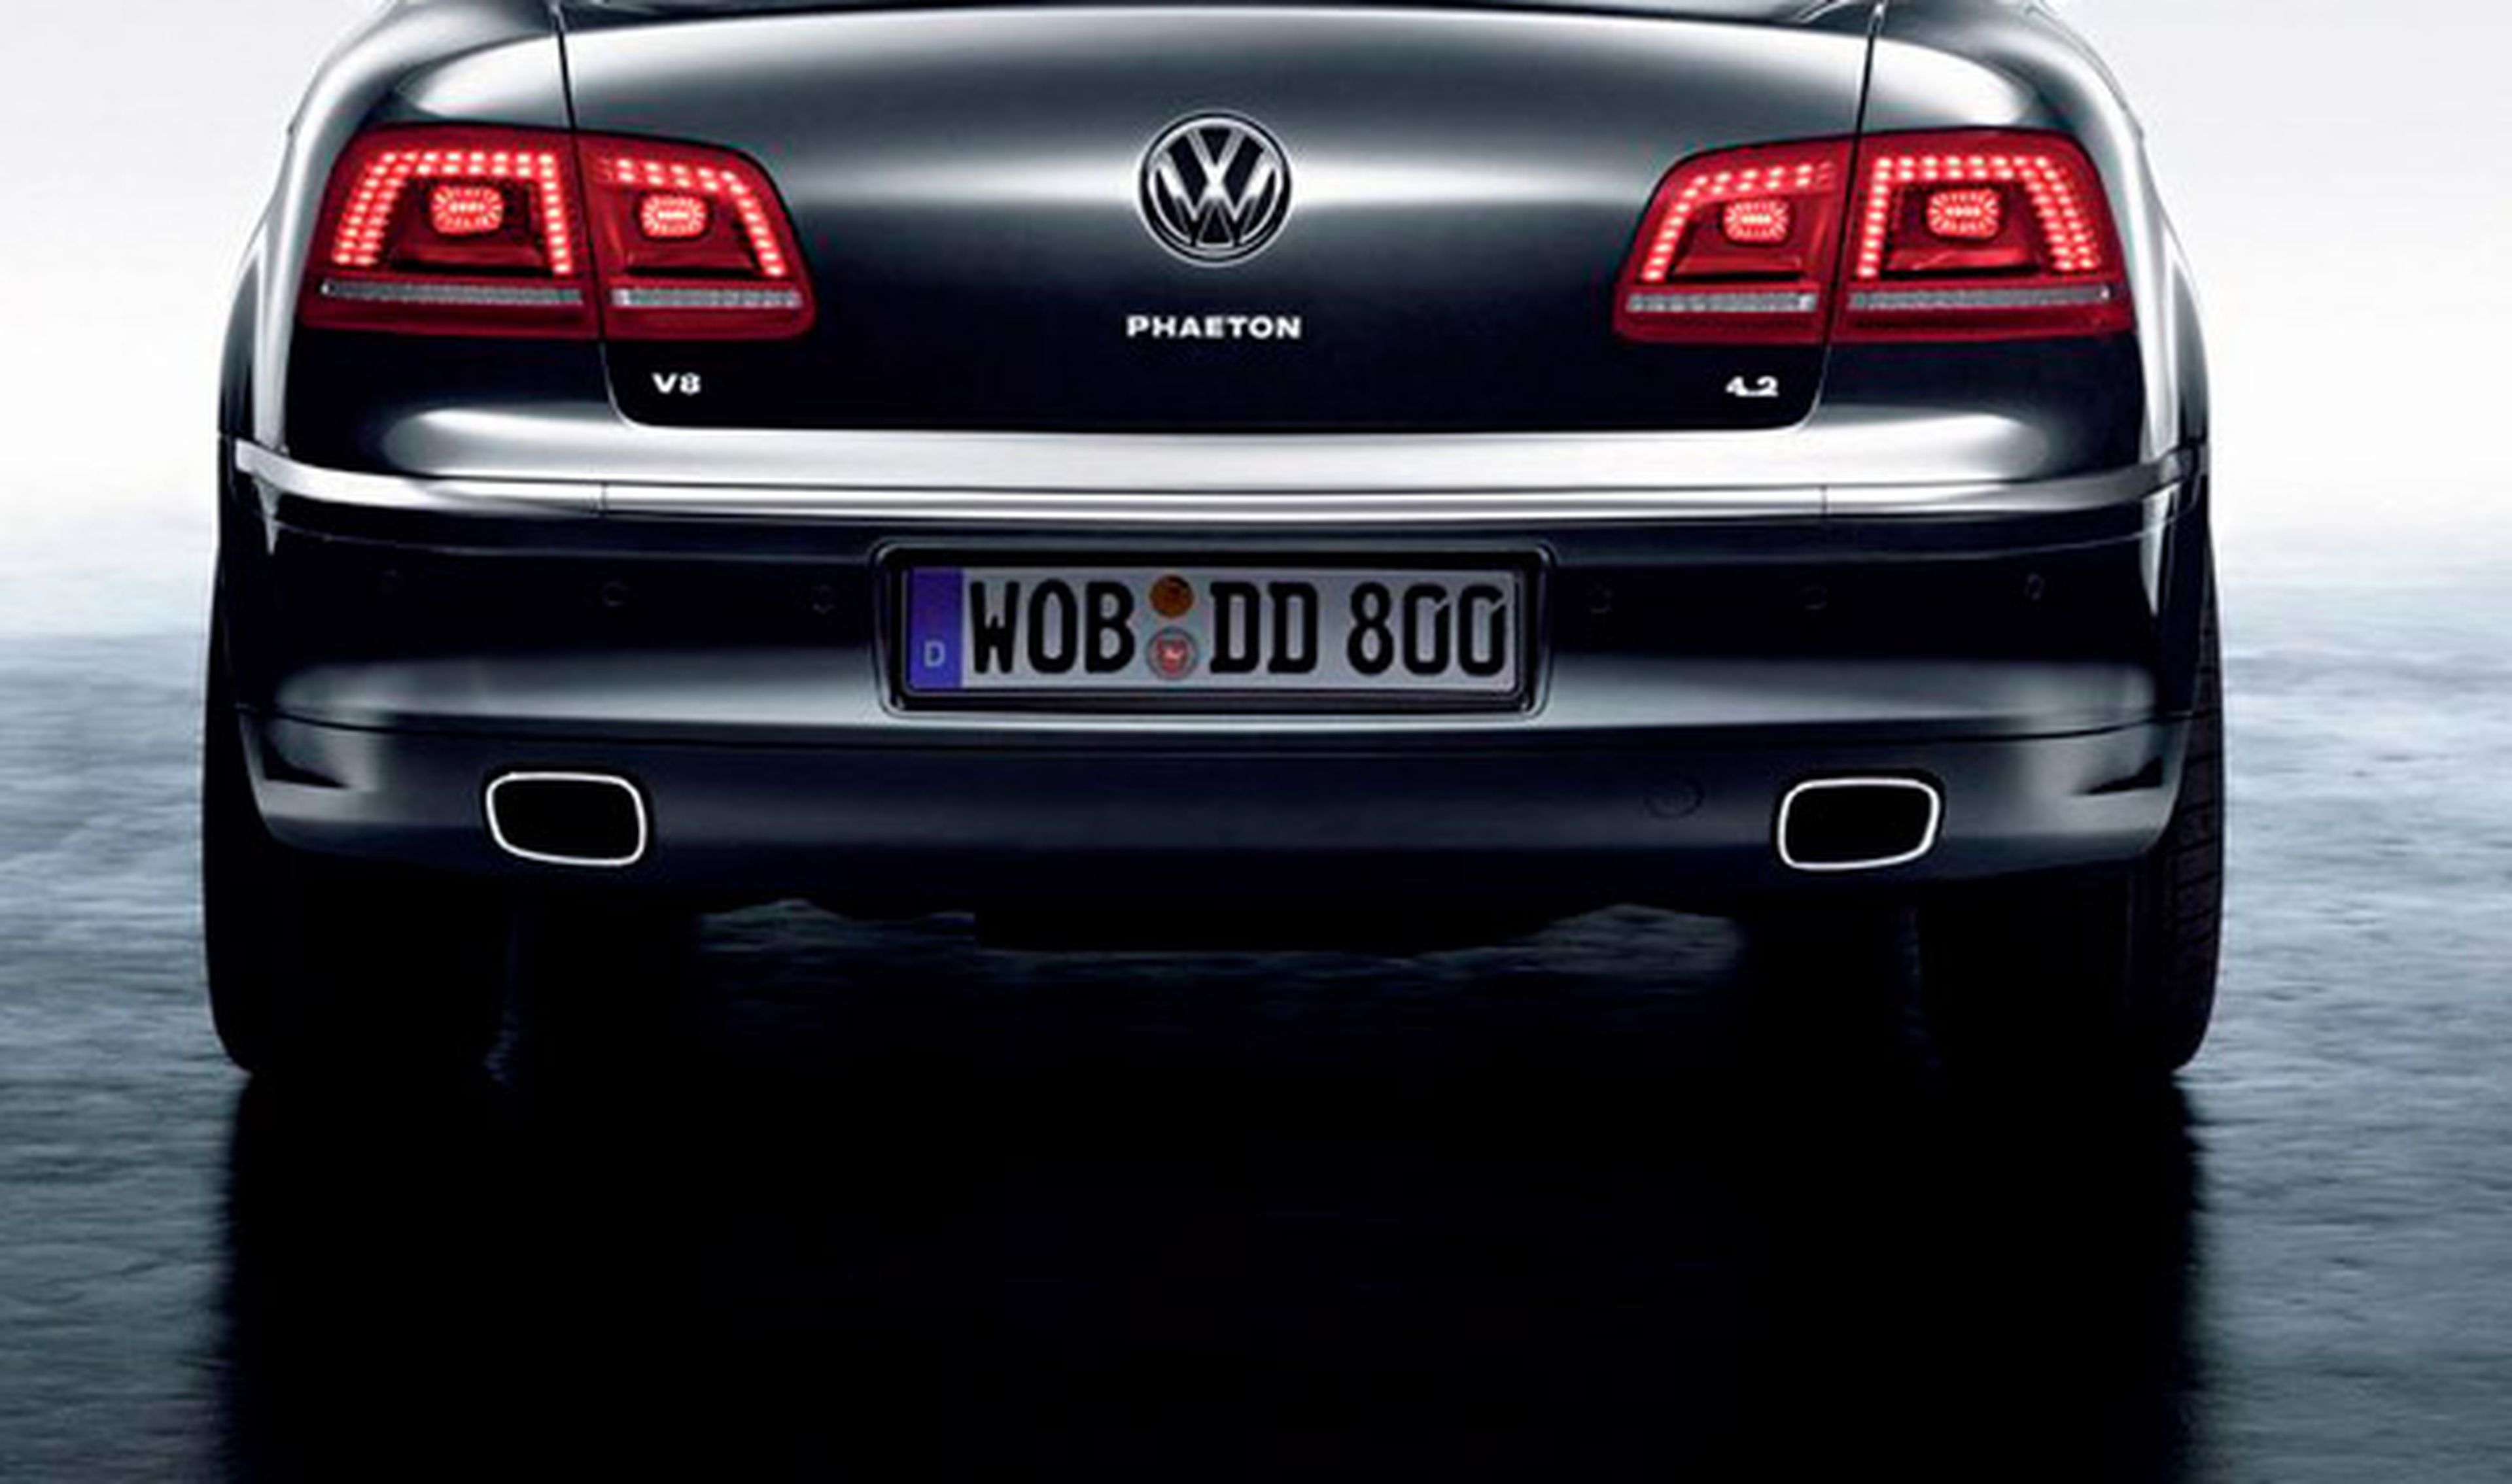 Volkswagen planea reducir los costes del nuevo Phaeton